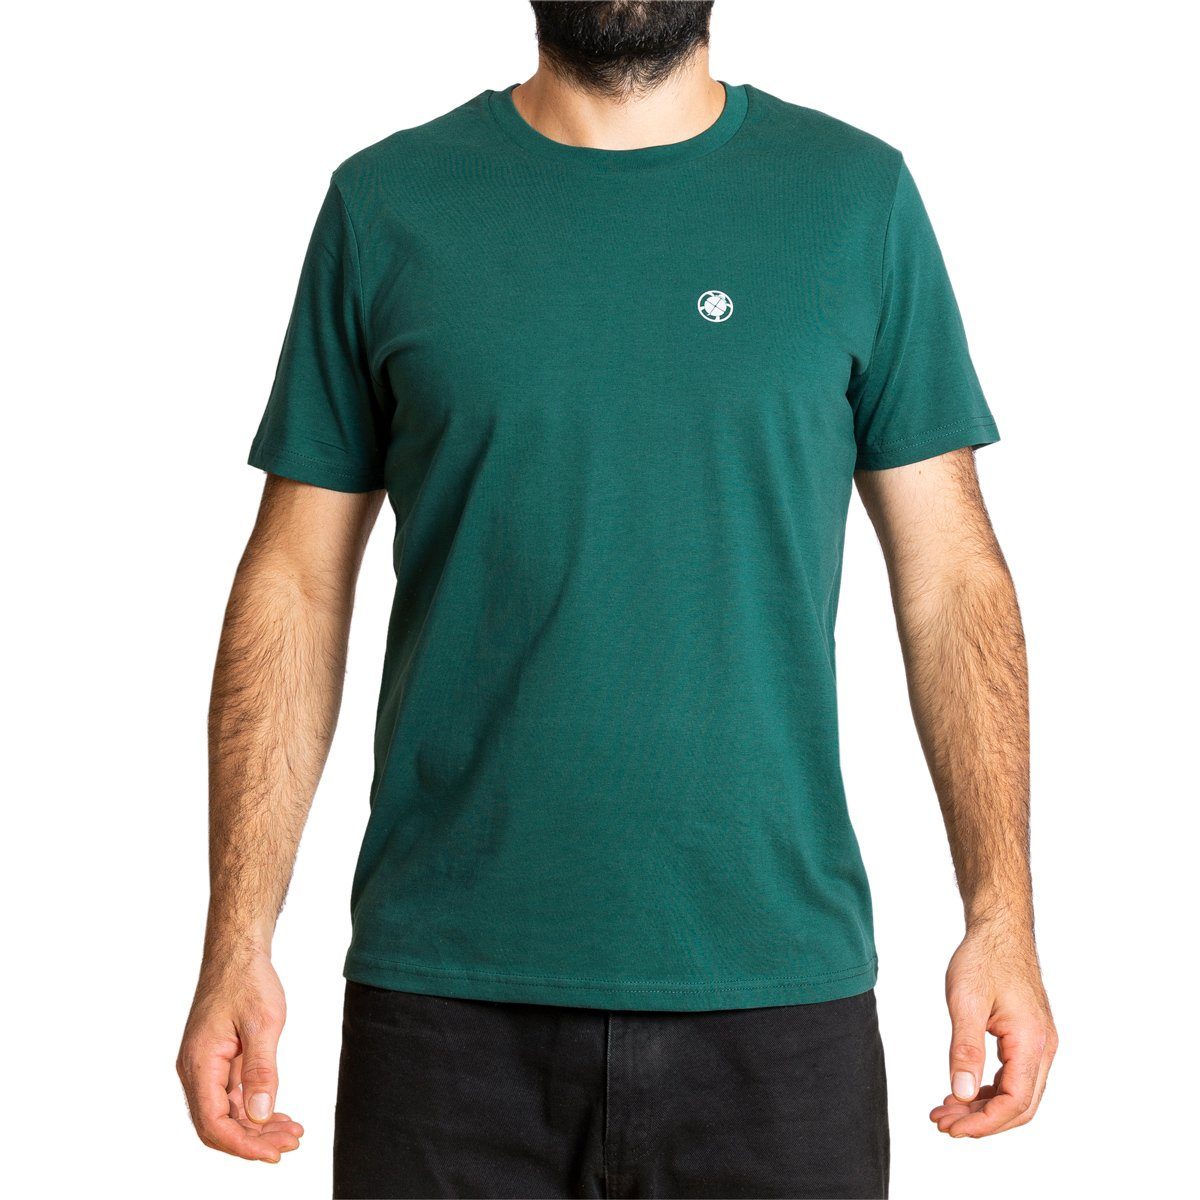 T-Shirt T-Shirt aus dunkelgrün PANASIAM fair Baumwolle Bio gehandelter Herren "Basic"